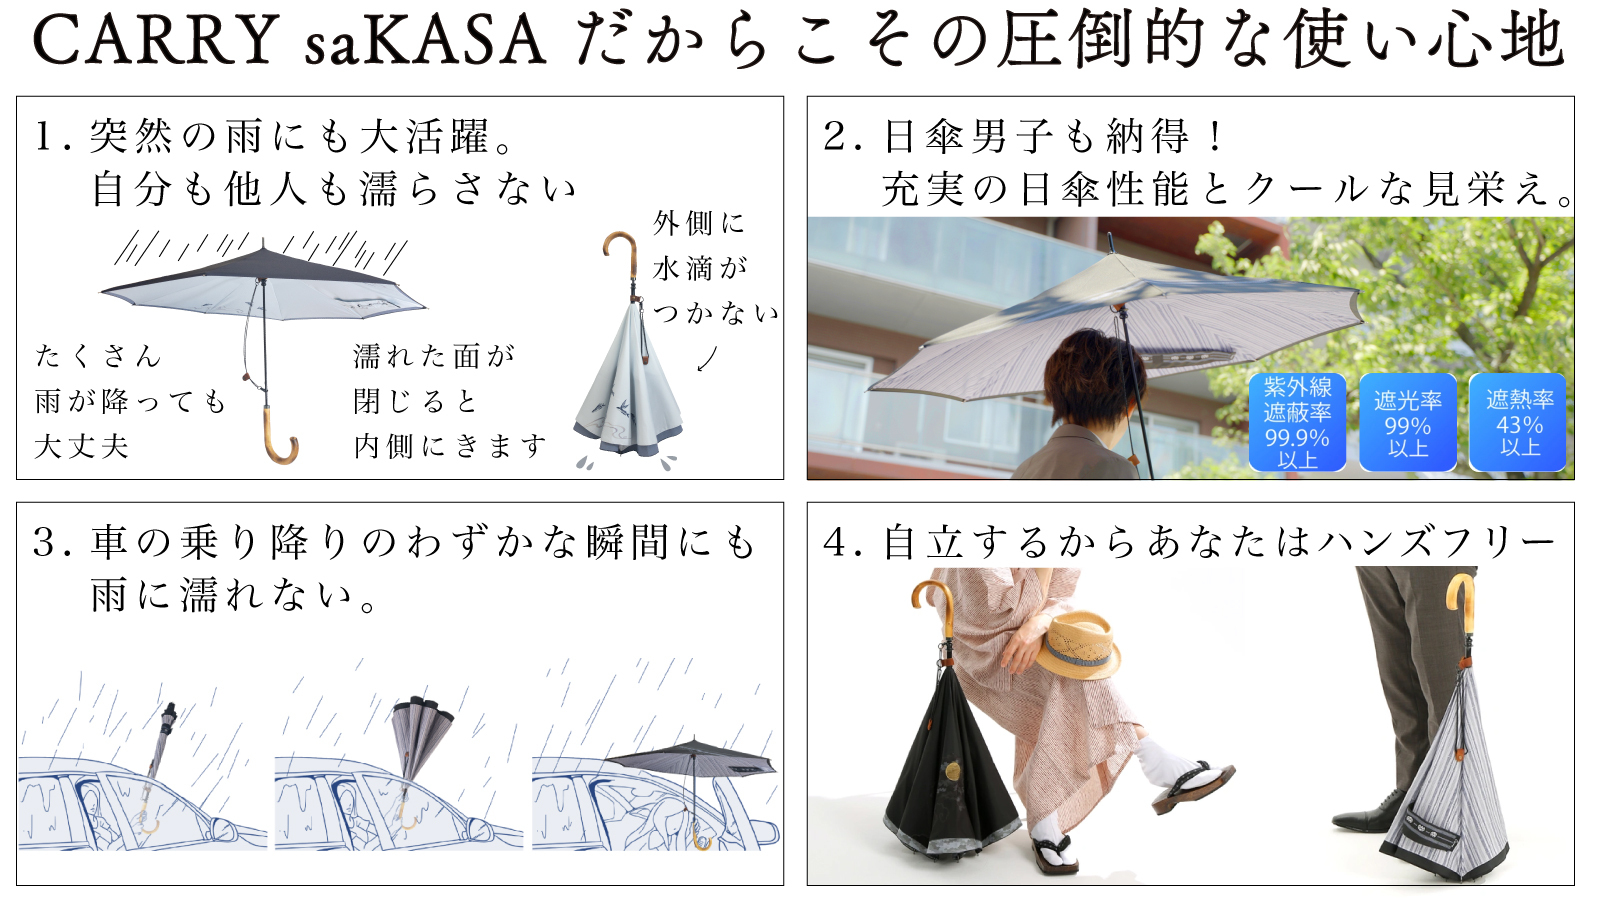 傘ブランド「CARRY saKASA」が、新作の紳士向け和柄逆さ傘をMakuakeに 